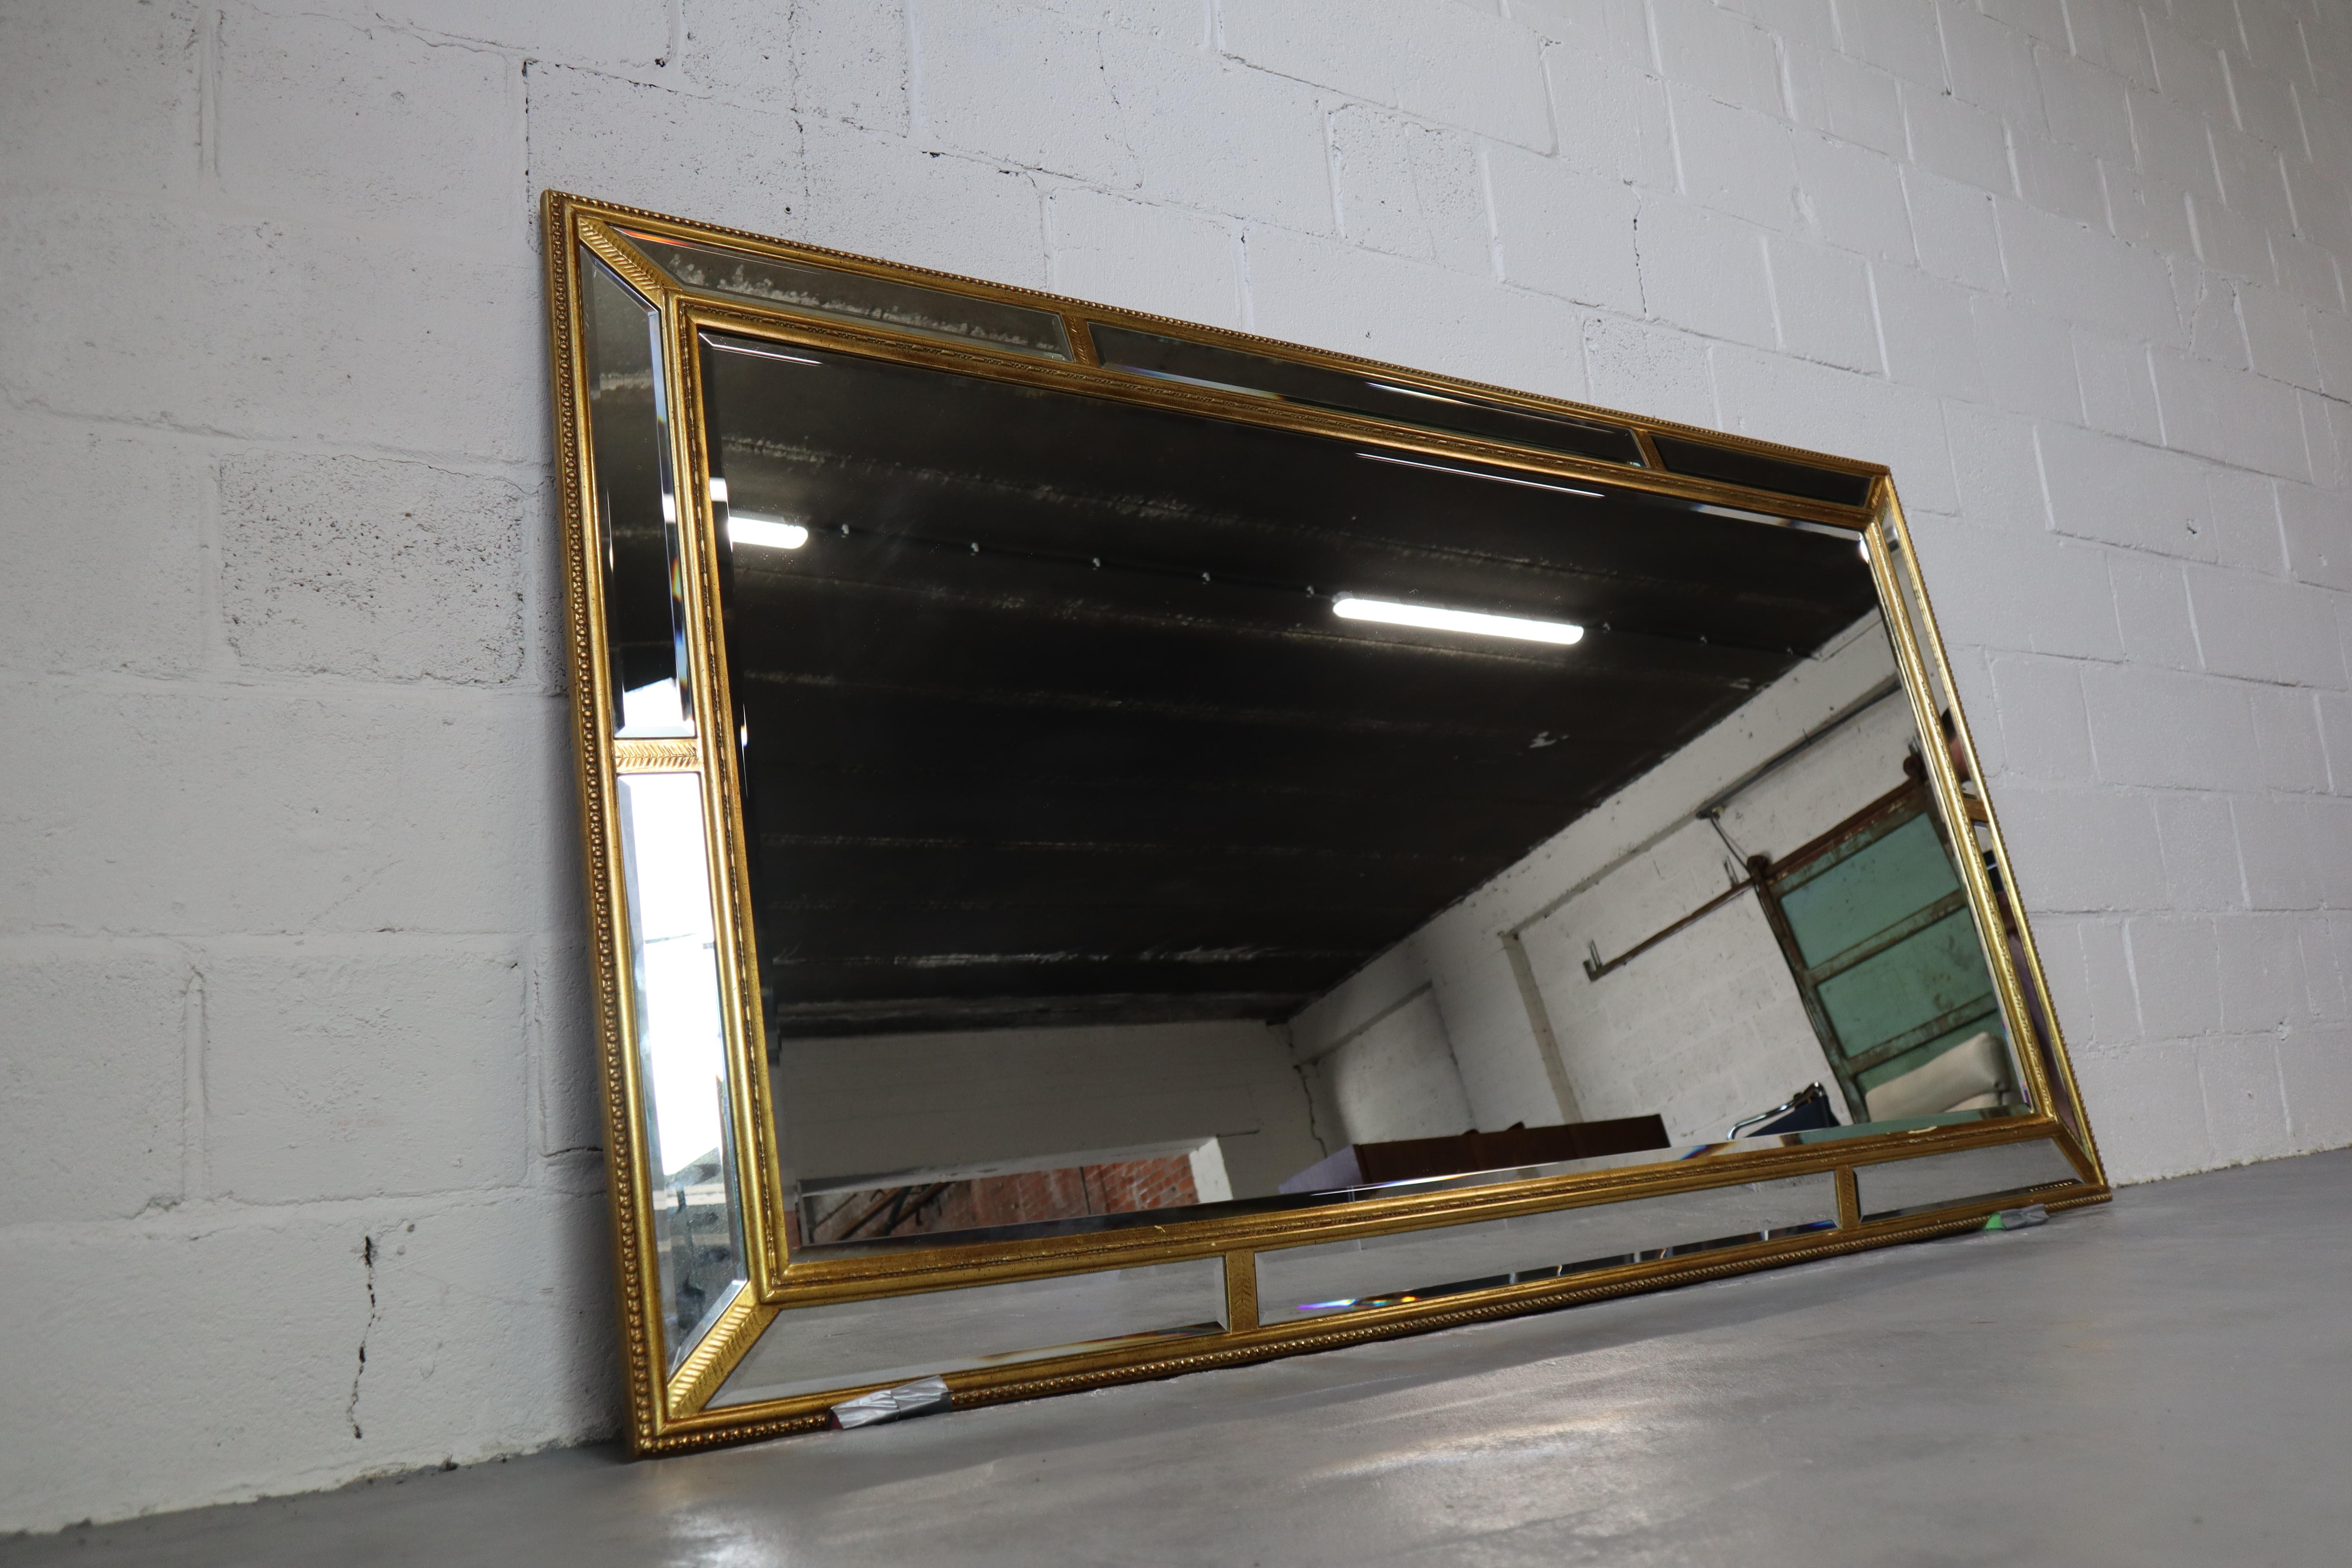 Vintage XXL facettierter Luxus-Spiegel mit vergoldetem Rahmen von Deknudt! Der Spiegel kann sowohl vertikal als auch horizontal verwendet werden. Deknudt ist bekannt für seine qualitativ hochwertigen Spiegel.
Der Spiegel passt sowohl in ein